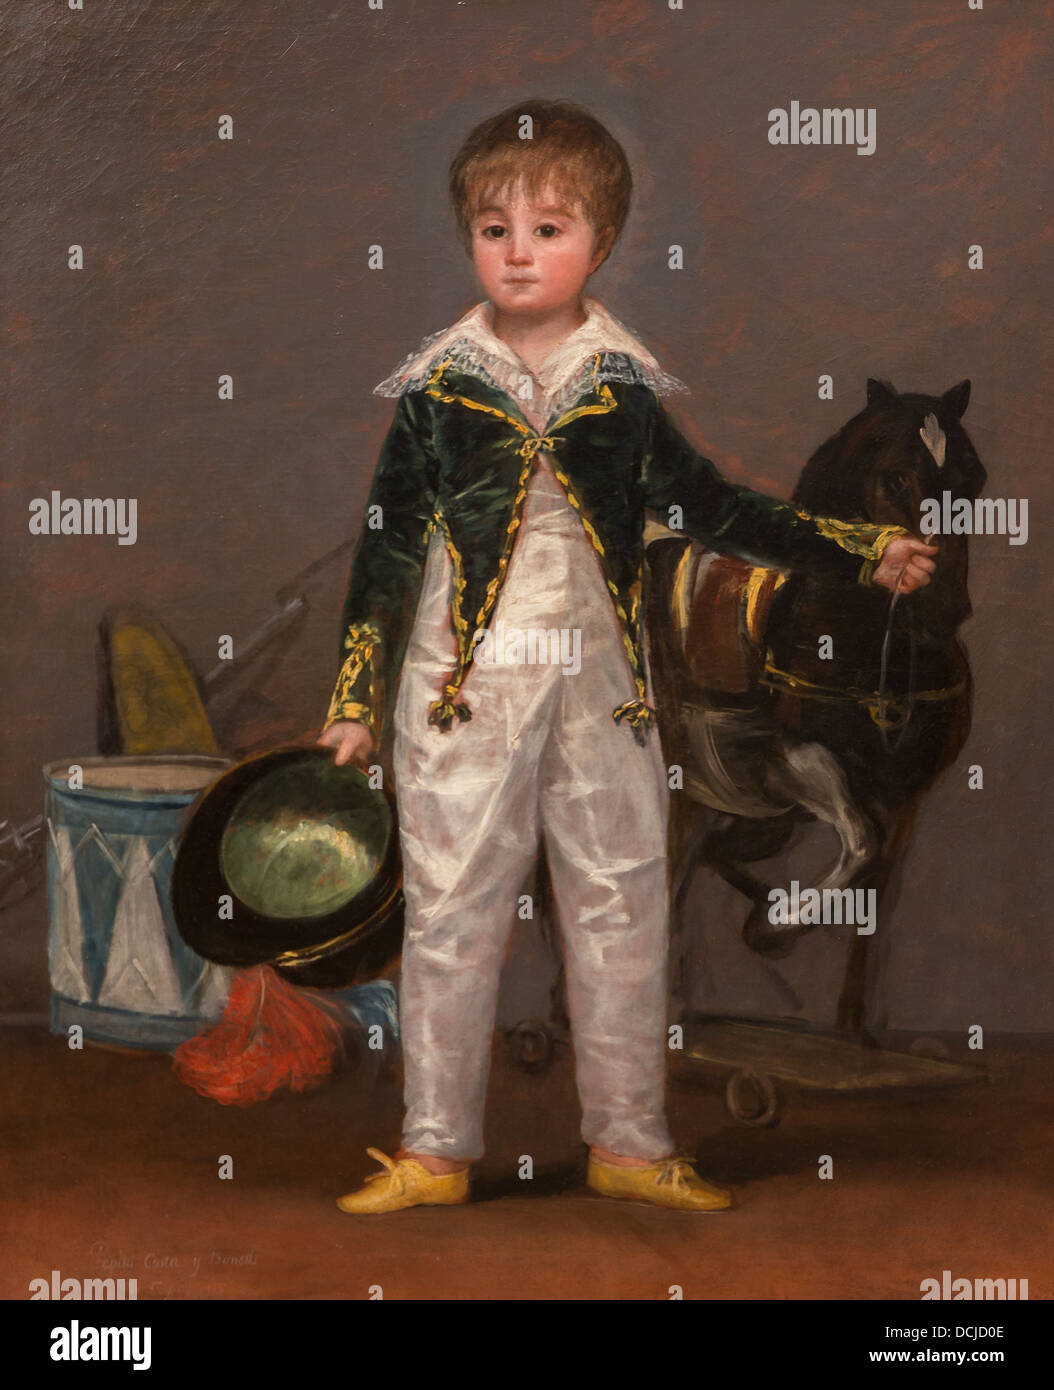 19e siècle - Jose Costa y Bonells, 1810 - Goya Philippe Sauvan-Magnet / Active Museum Banque D'Images